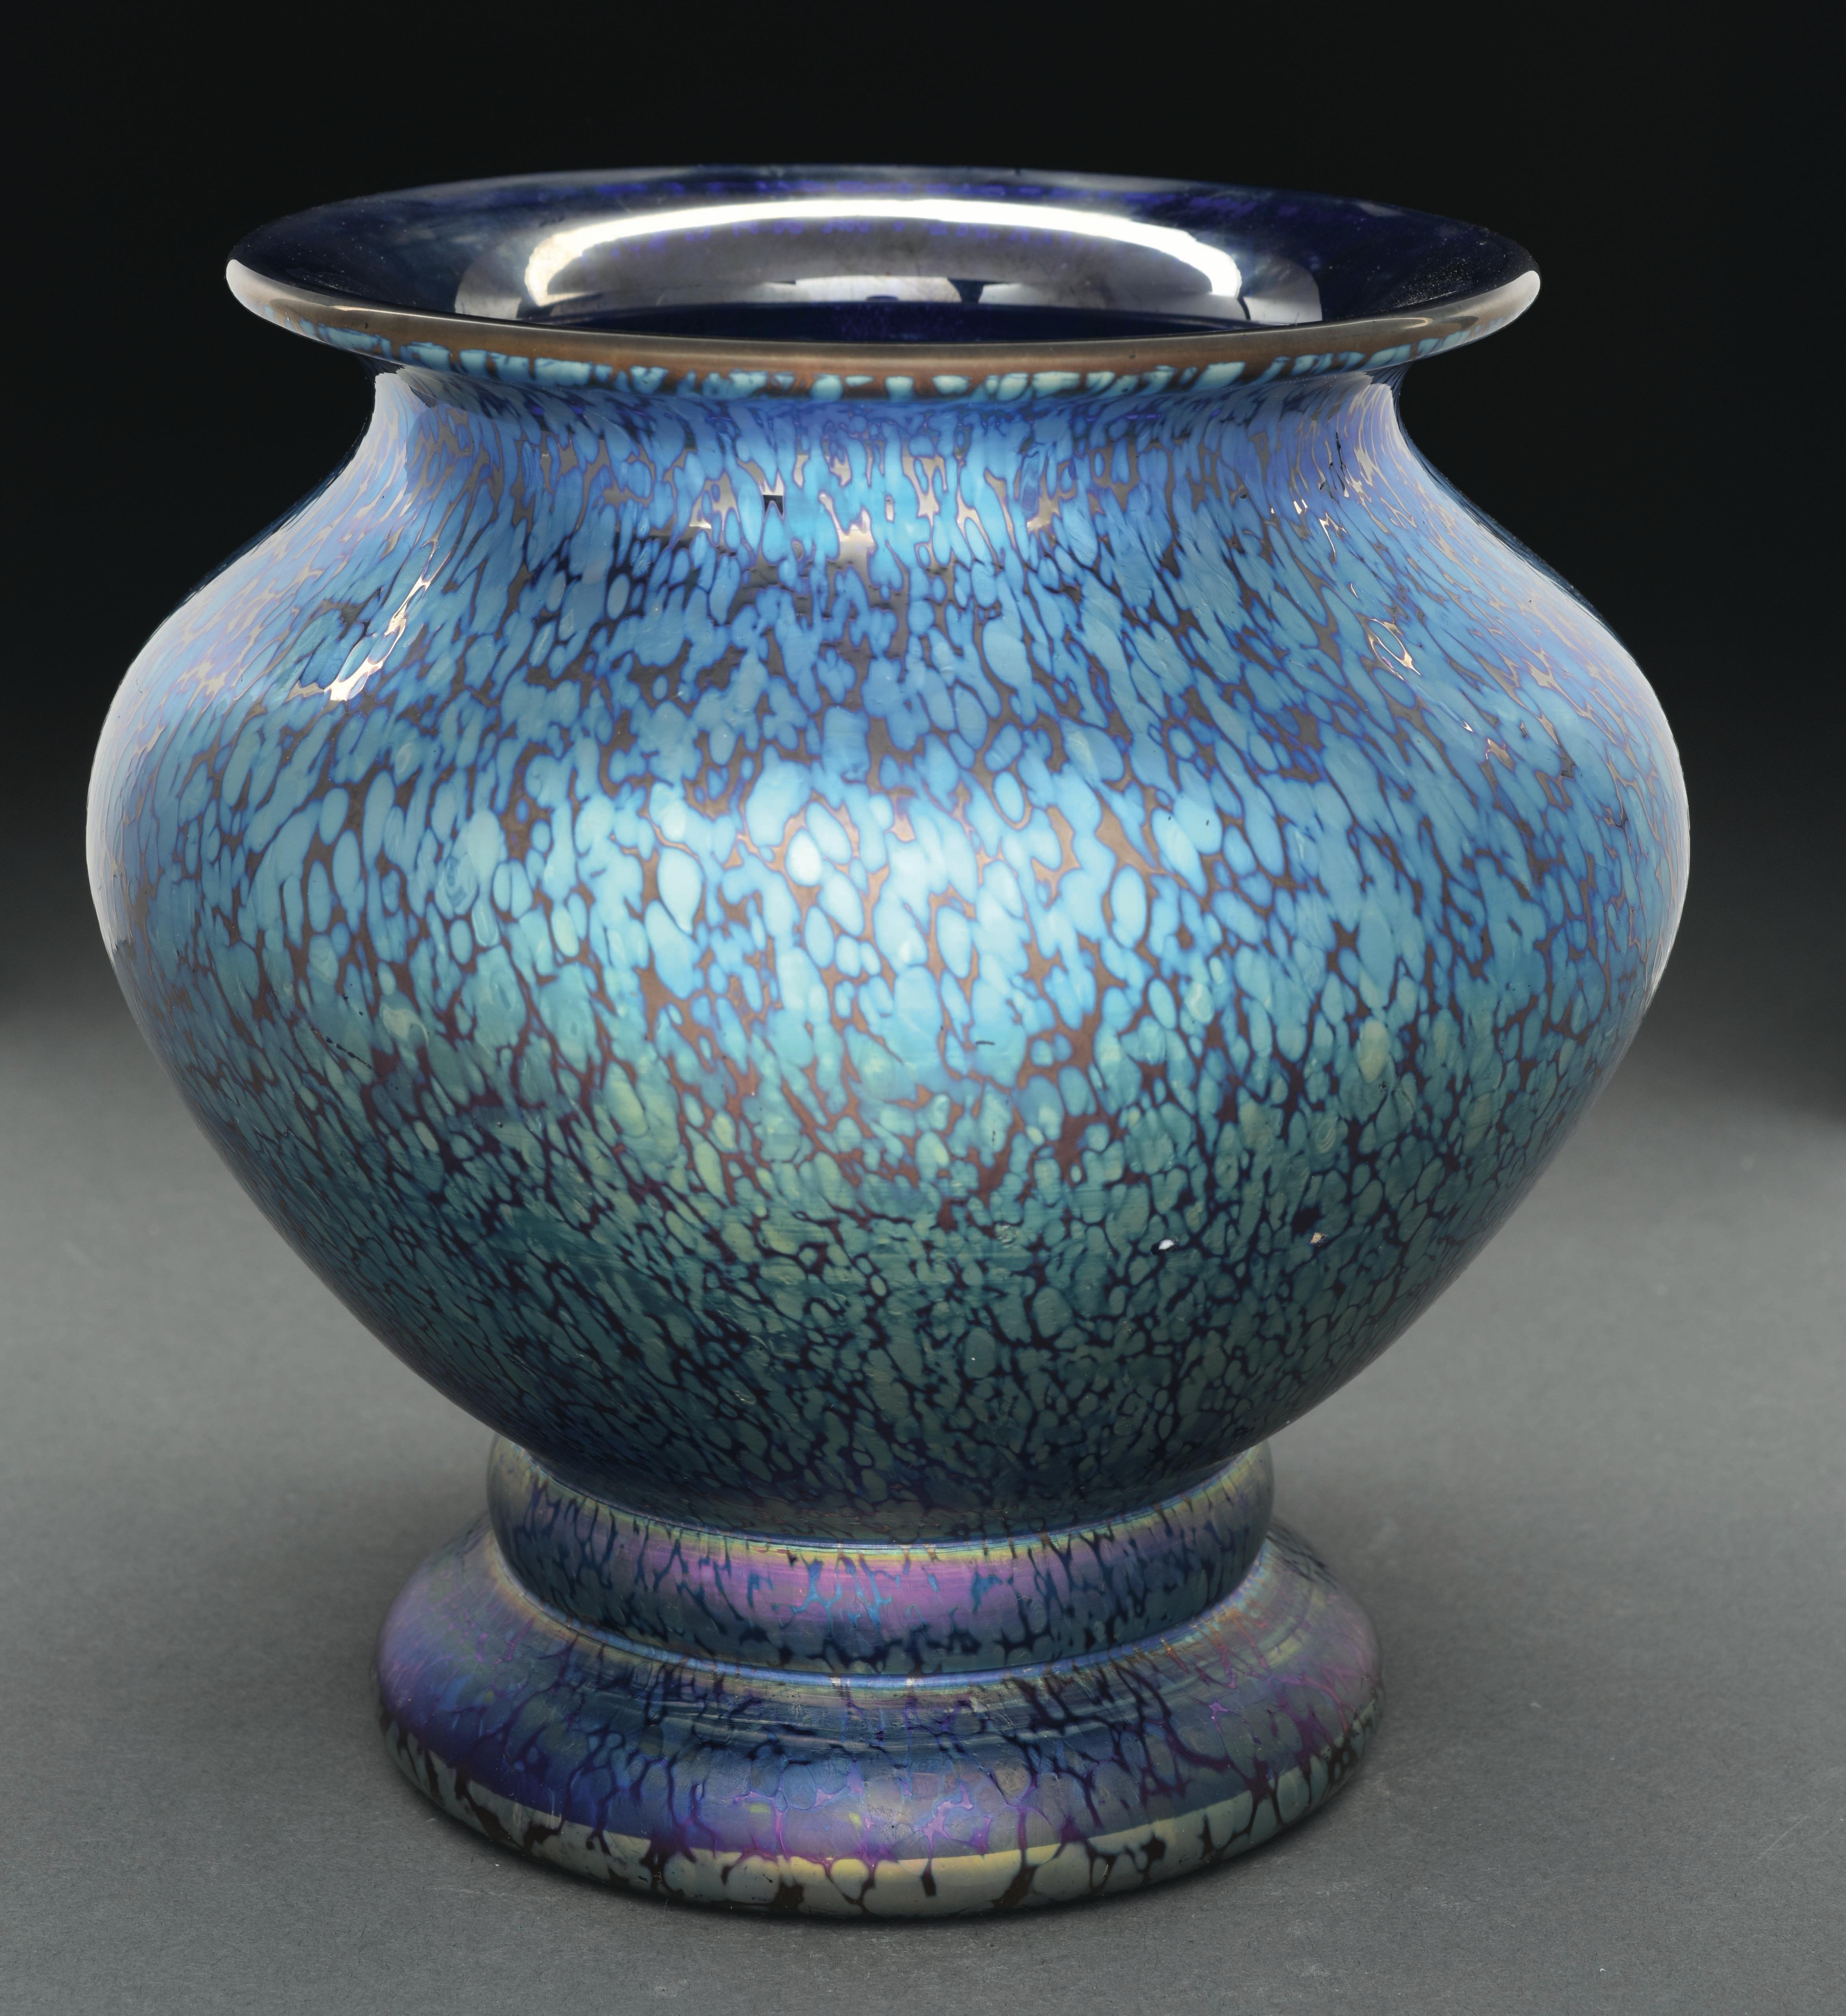 Diese Vase von Loetz mit dem Muster Cobalt Papillon hat ein blau schillerndes Papillon-Muster, das die Außenseite der Vase bedeckt. 

Die Vase ist auf dem polierten Boden signiert 